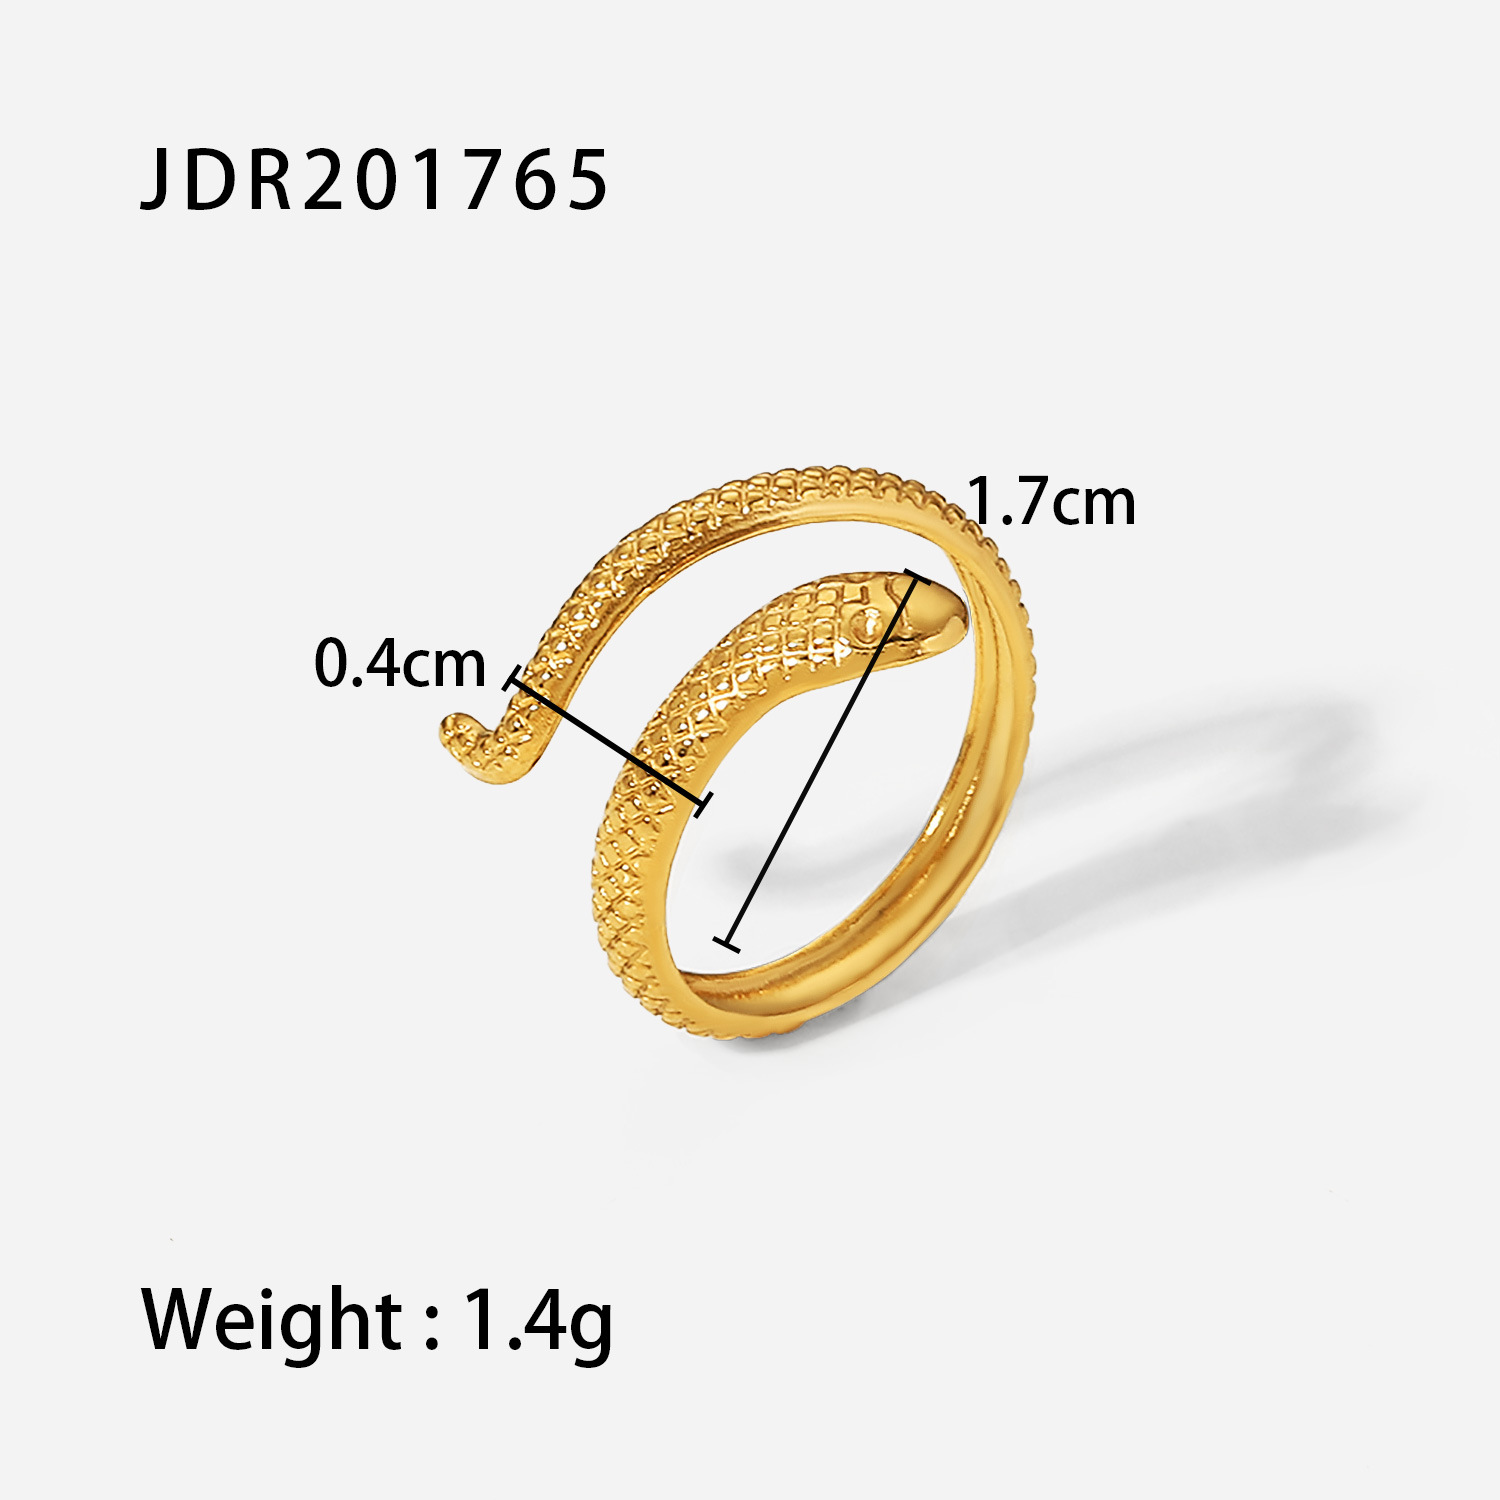 JDR201765 size